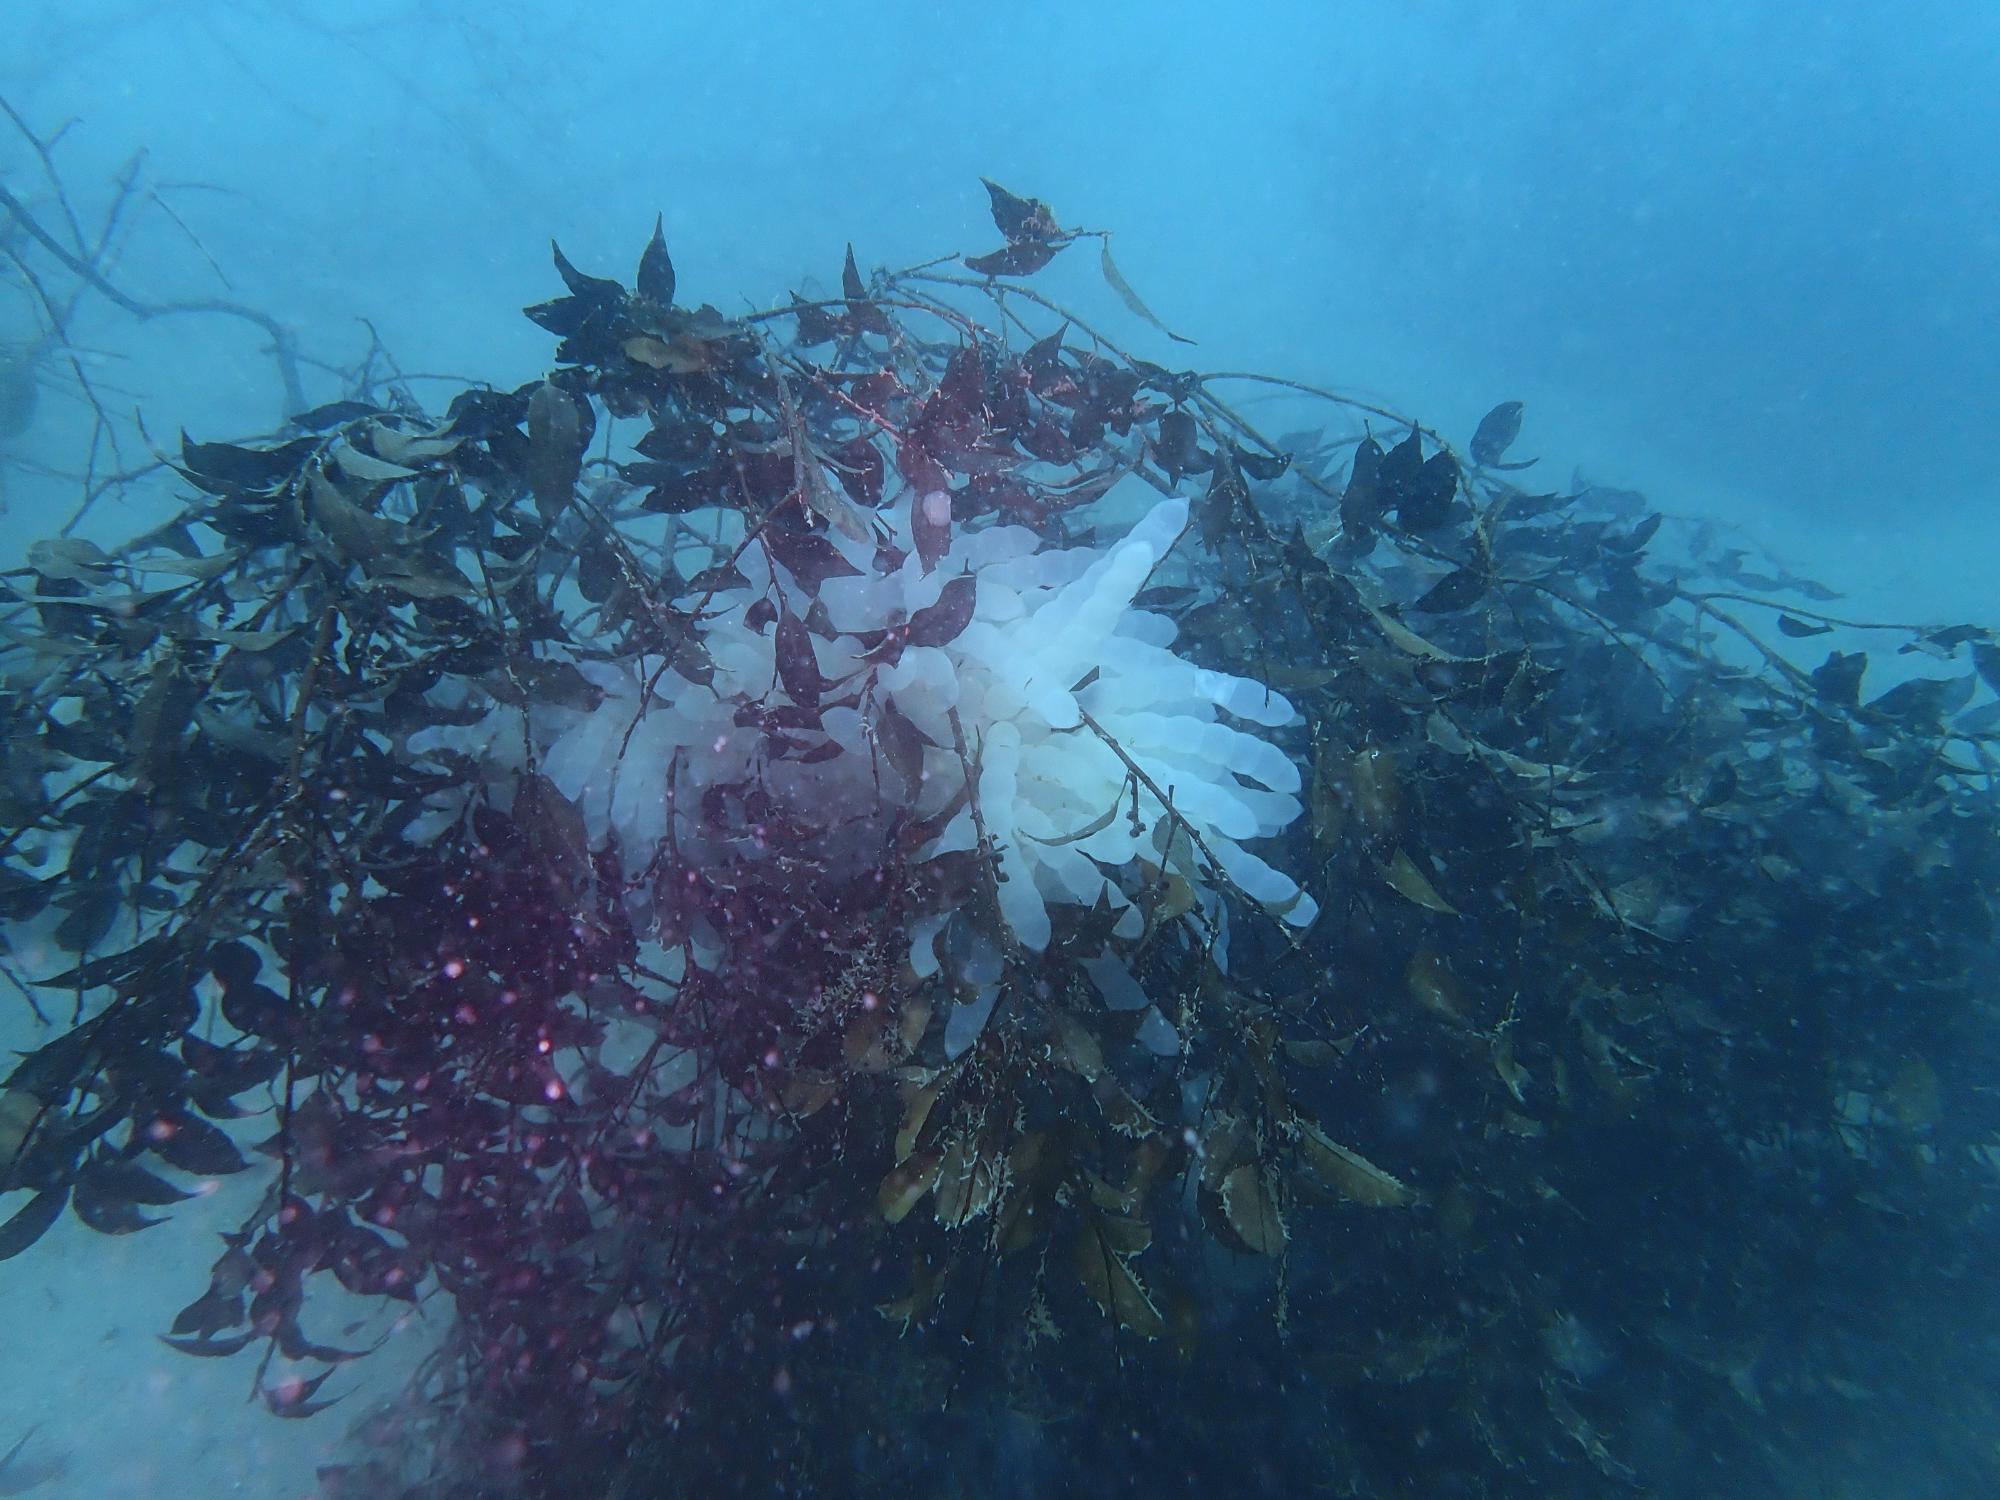 海藻の代わりとなる人工産卵床（イカ柴）に産み付けられたアオリイカの卵嚢の画像。束ねられた木の枝の中央にイカの卵が確認できる。